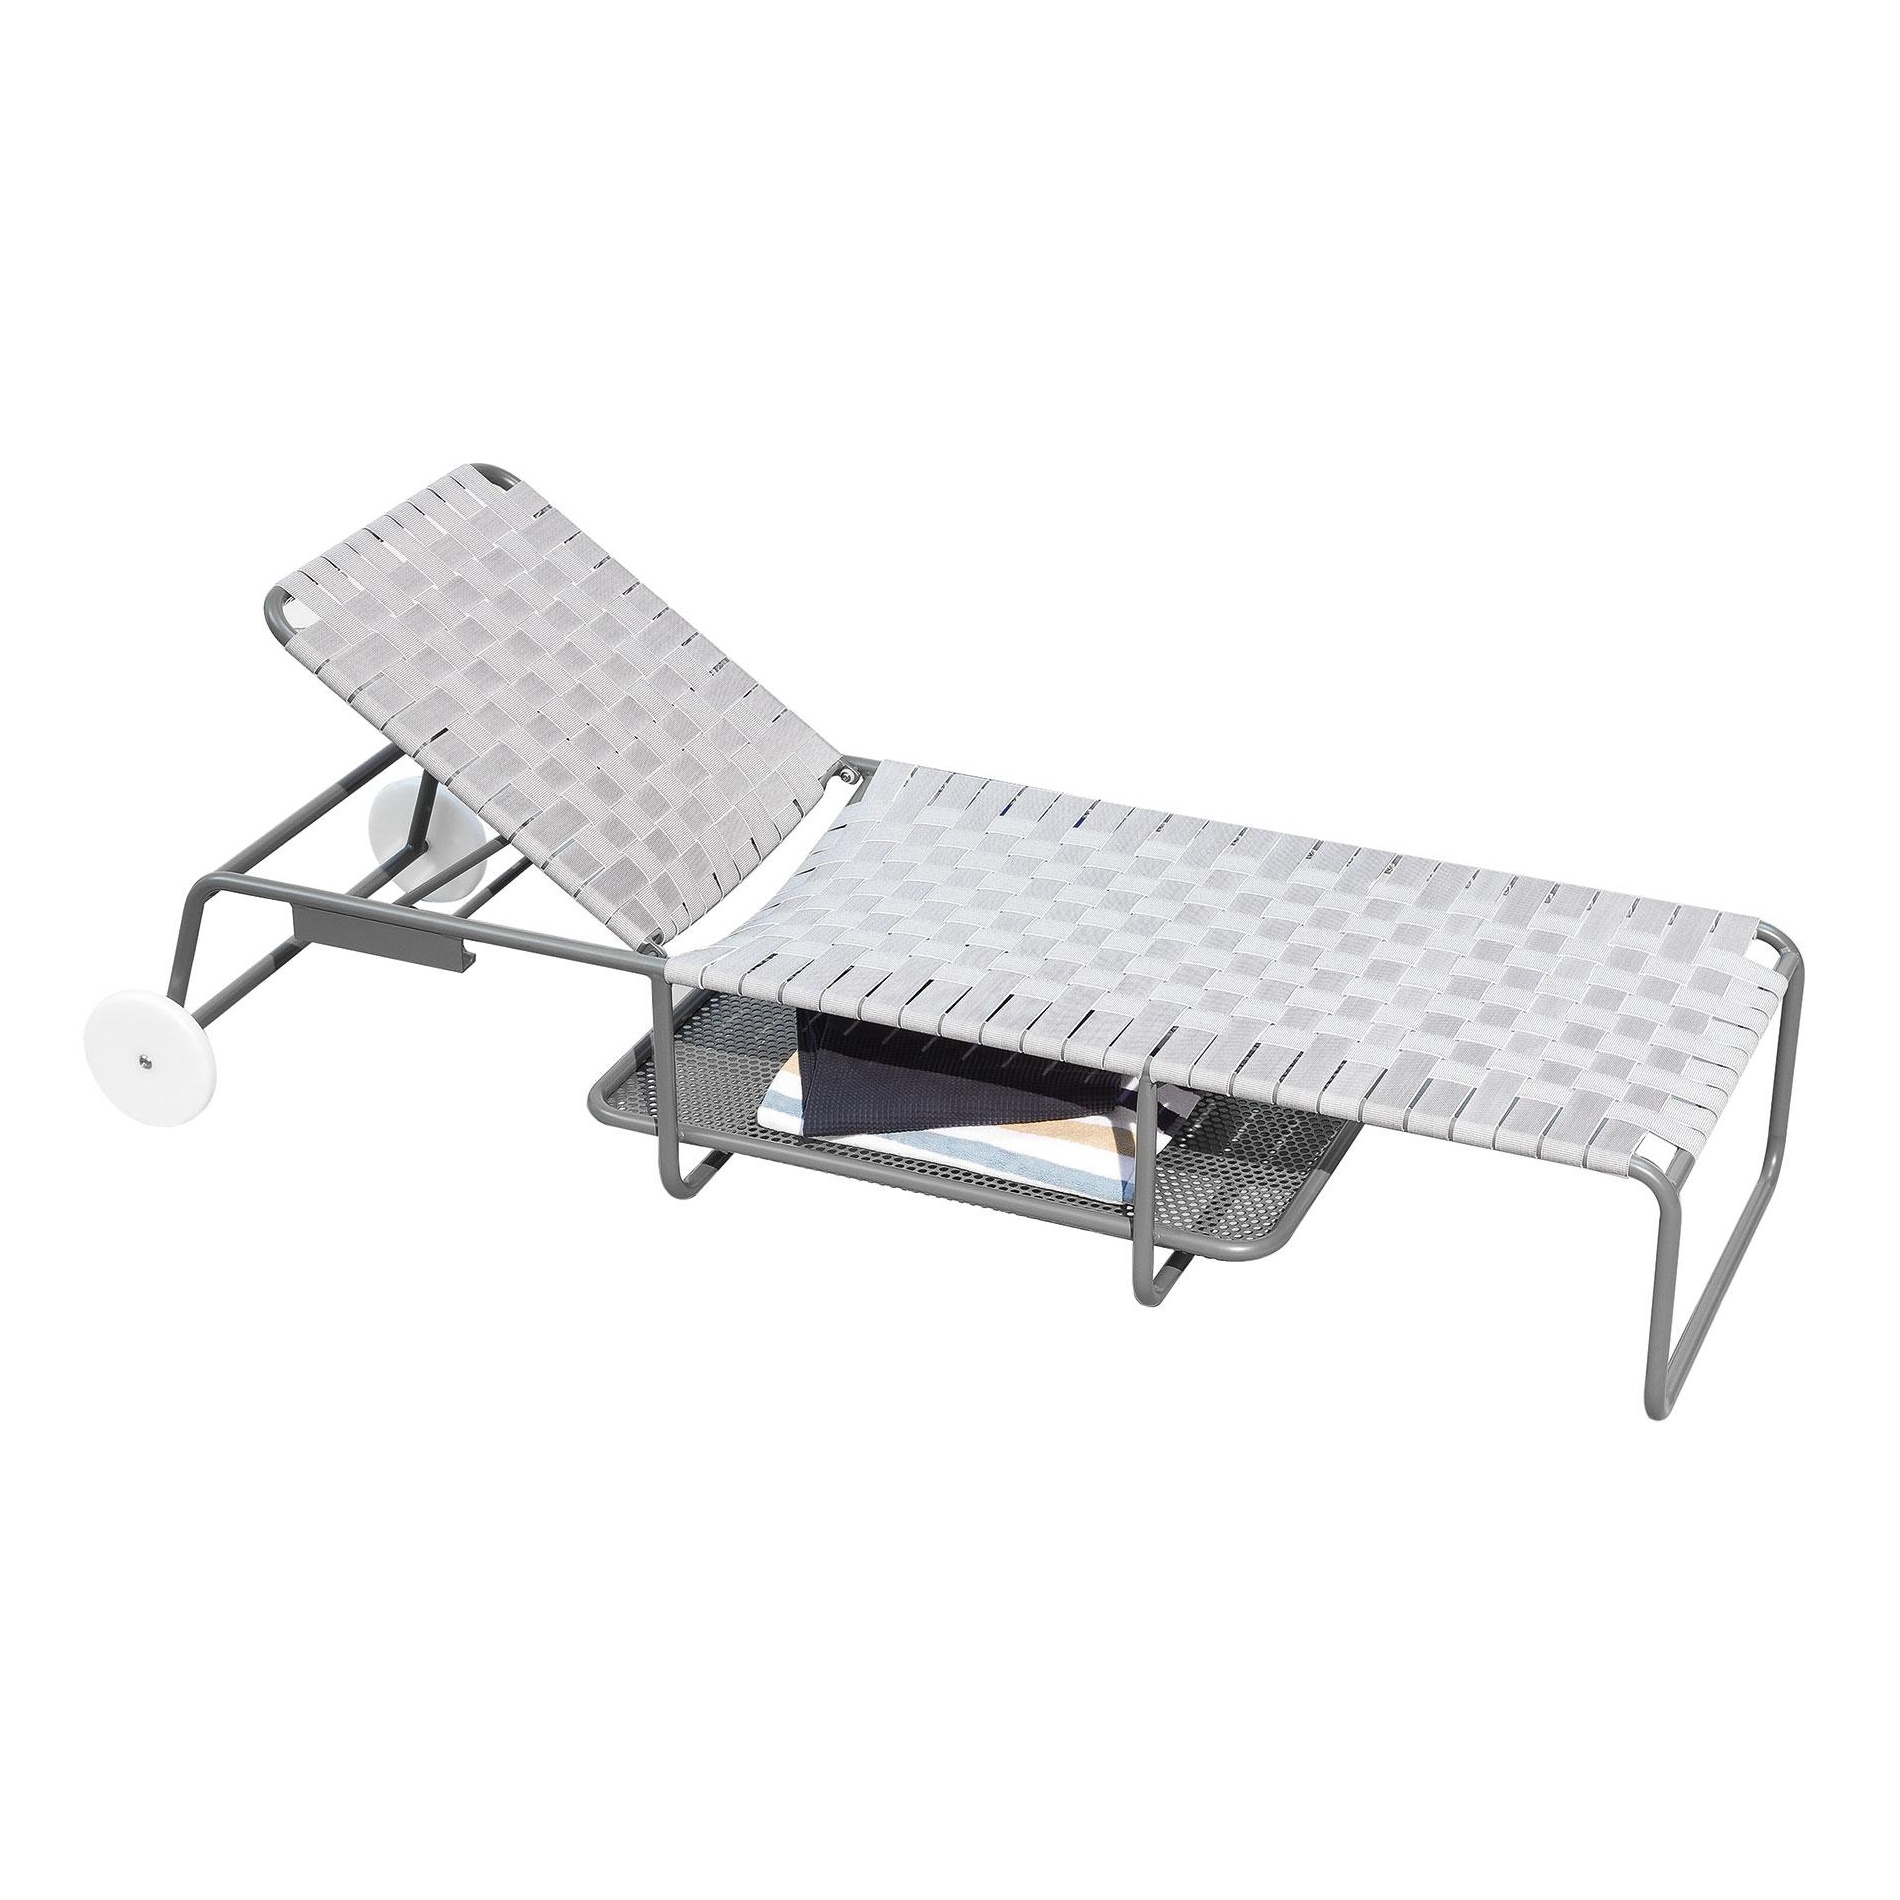 Gervasoni - Inout 883 Sonnenliege - grau/grau/Sitzfläche aus elastischen Gurten/Gestell Aluminium grau lackiert/LxBxH 216x78x91cm von Gervasoni